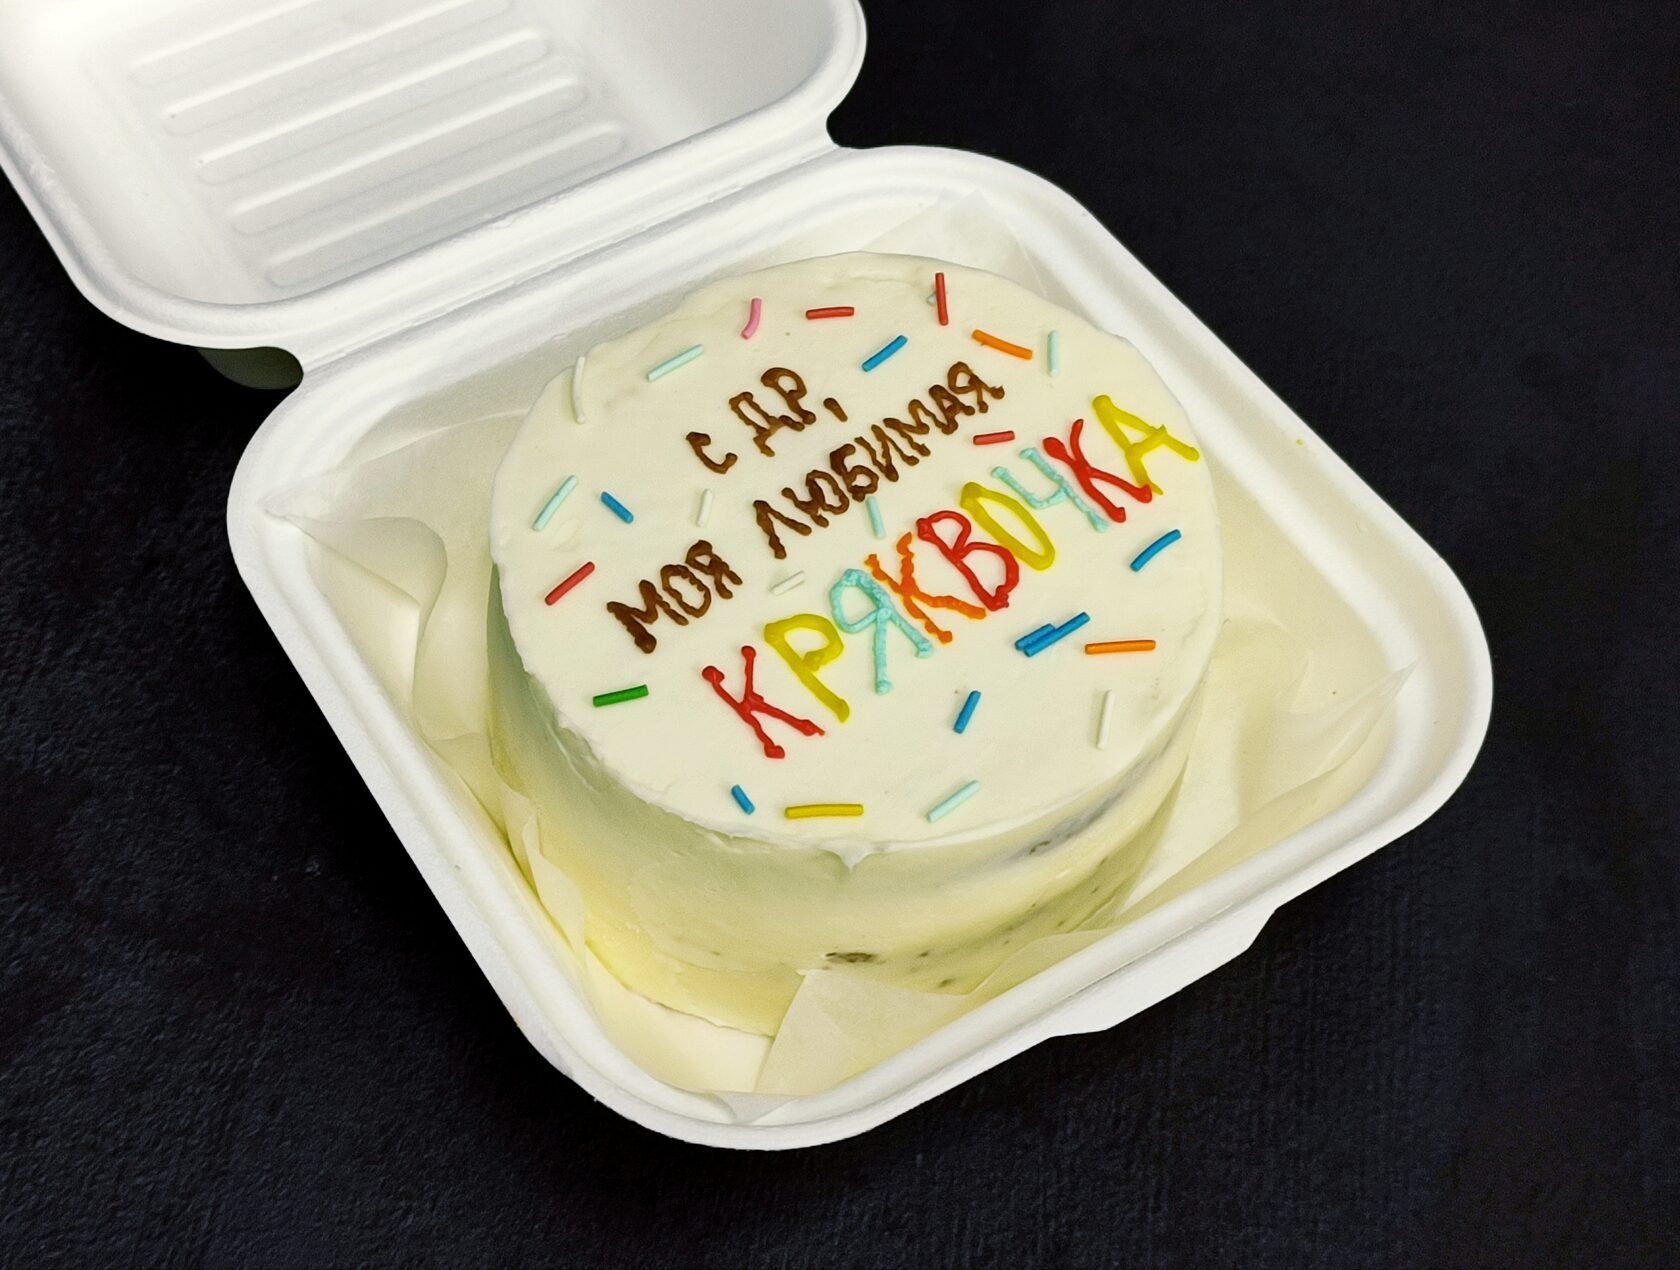 Бенто тортик прикольный на день рождения. Бенто торт. Бенто торт папе на день рождение. Бенто торт на день рождения парню. Бенто торт с приколом на день рождения.